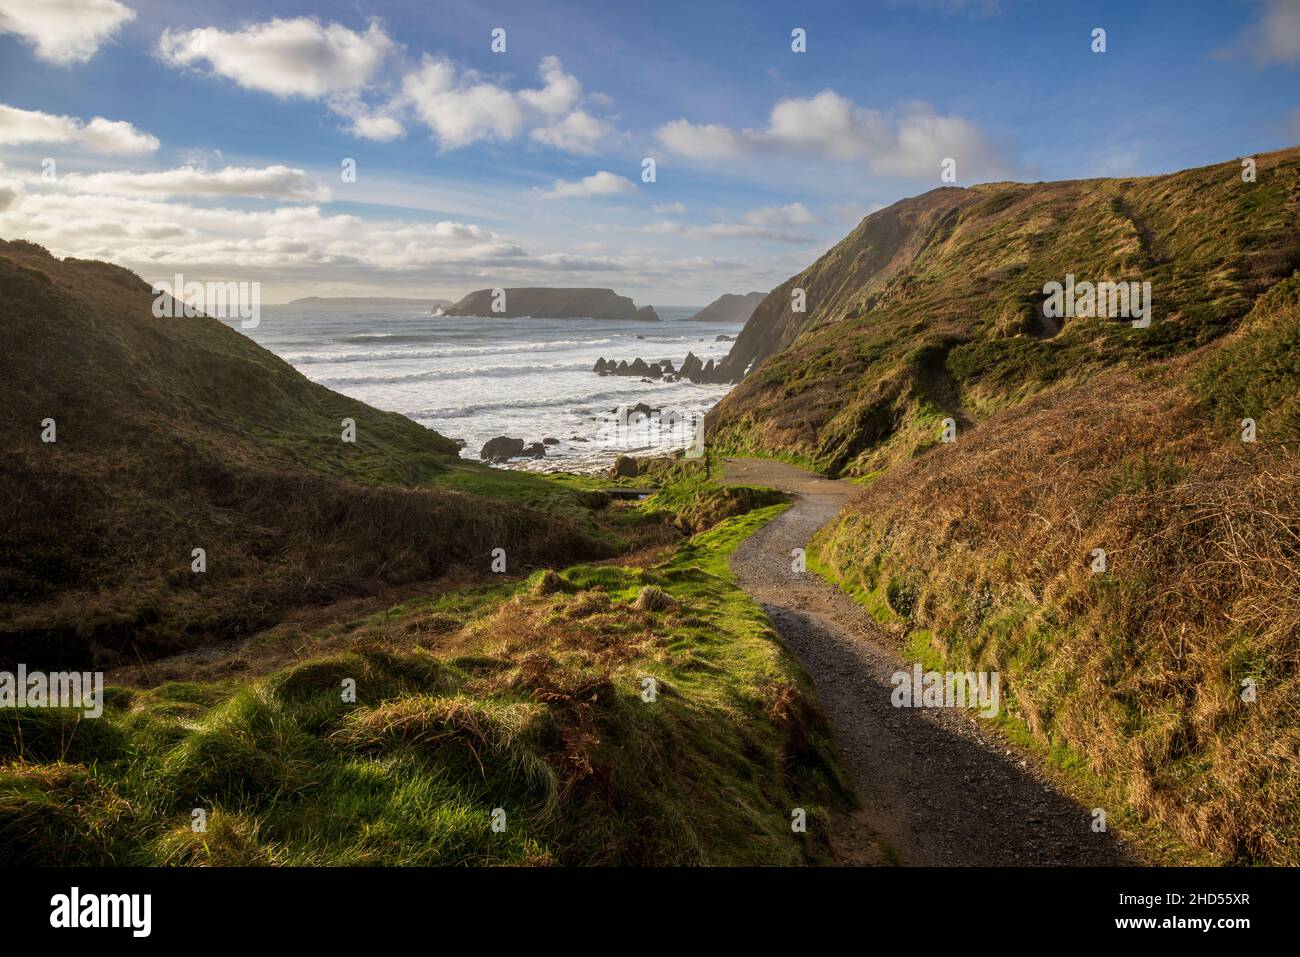 El camino que conduce a la playa de Marloes Sands, Parque Nacional de la Costa de Pembrokeshire, Gales del Sur Foto de stock